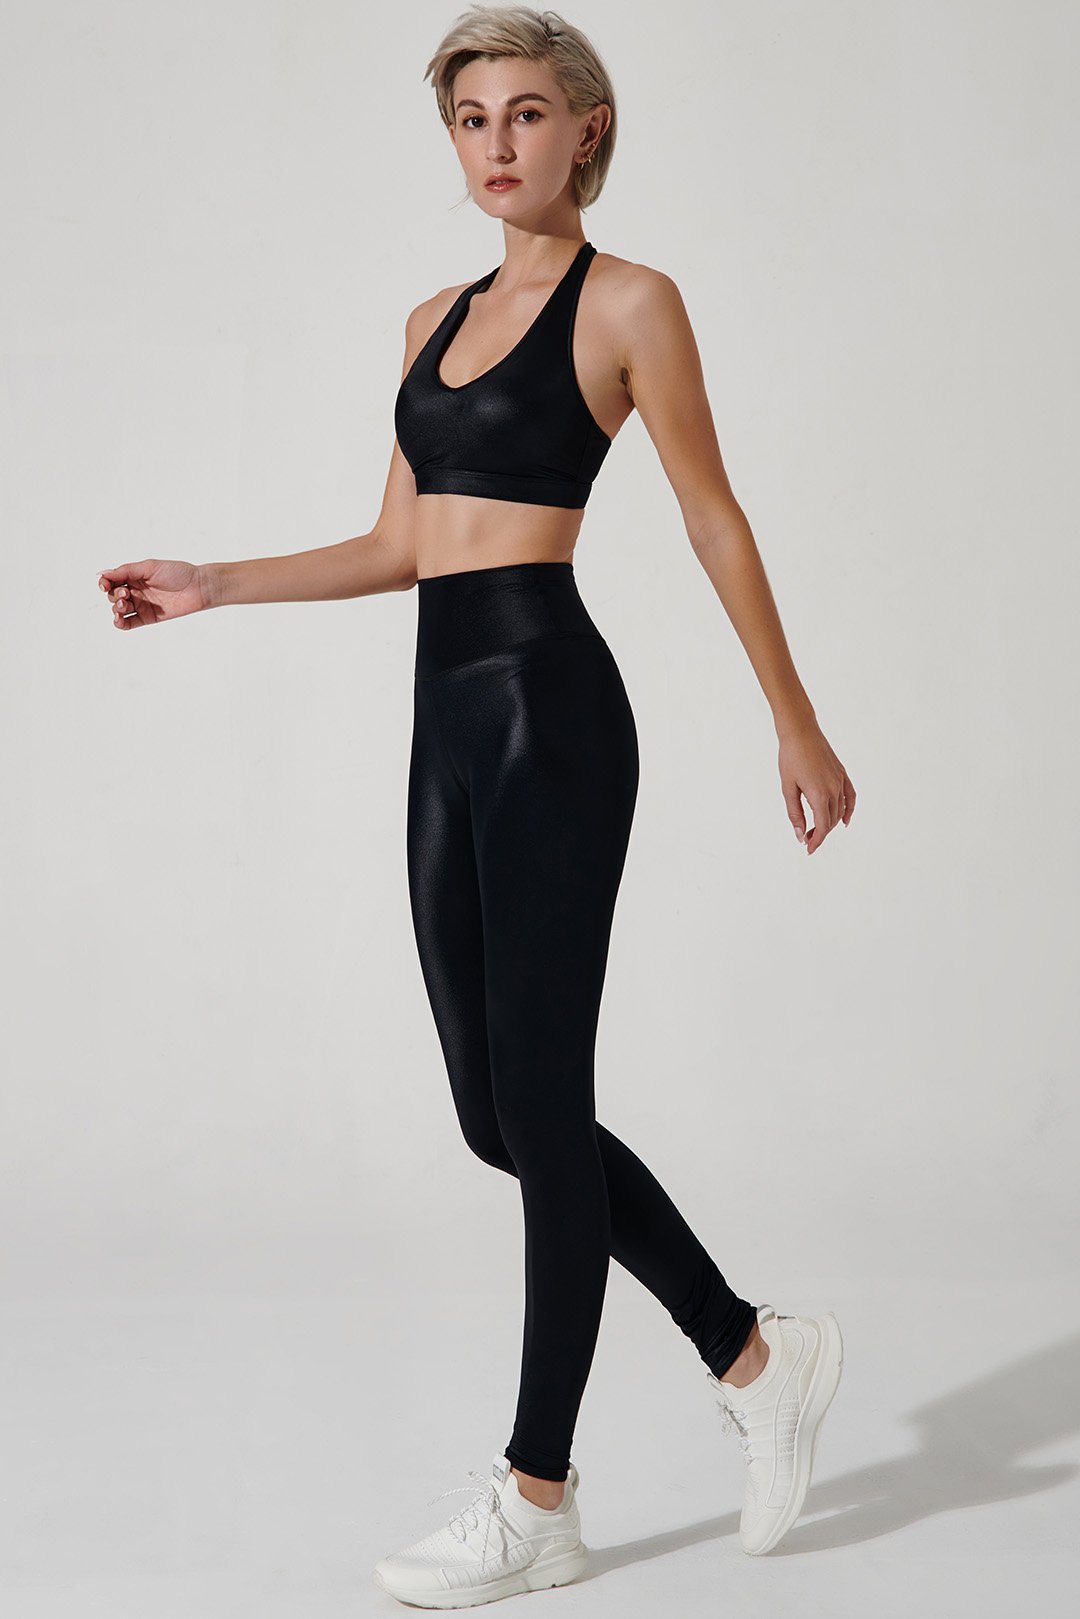 Jet black high-waisted leggings for women by Taka Swan, style OW-0134-WLG-BK.